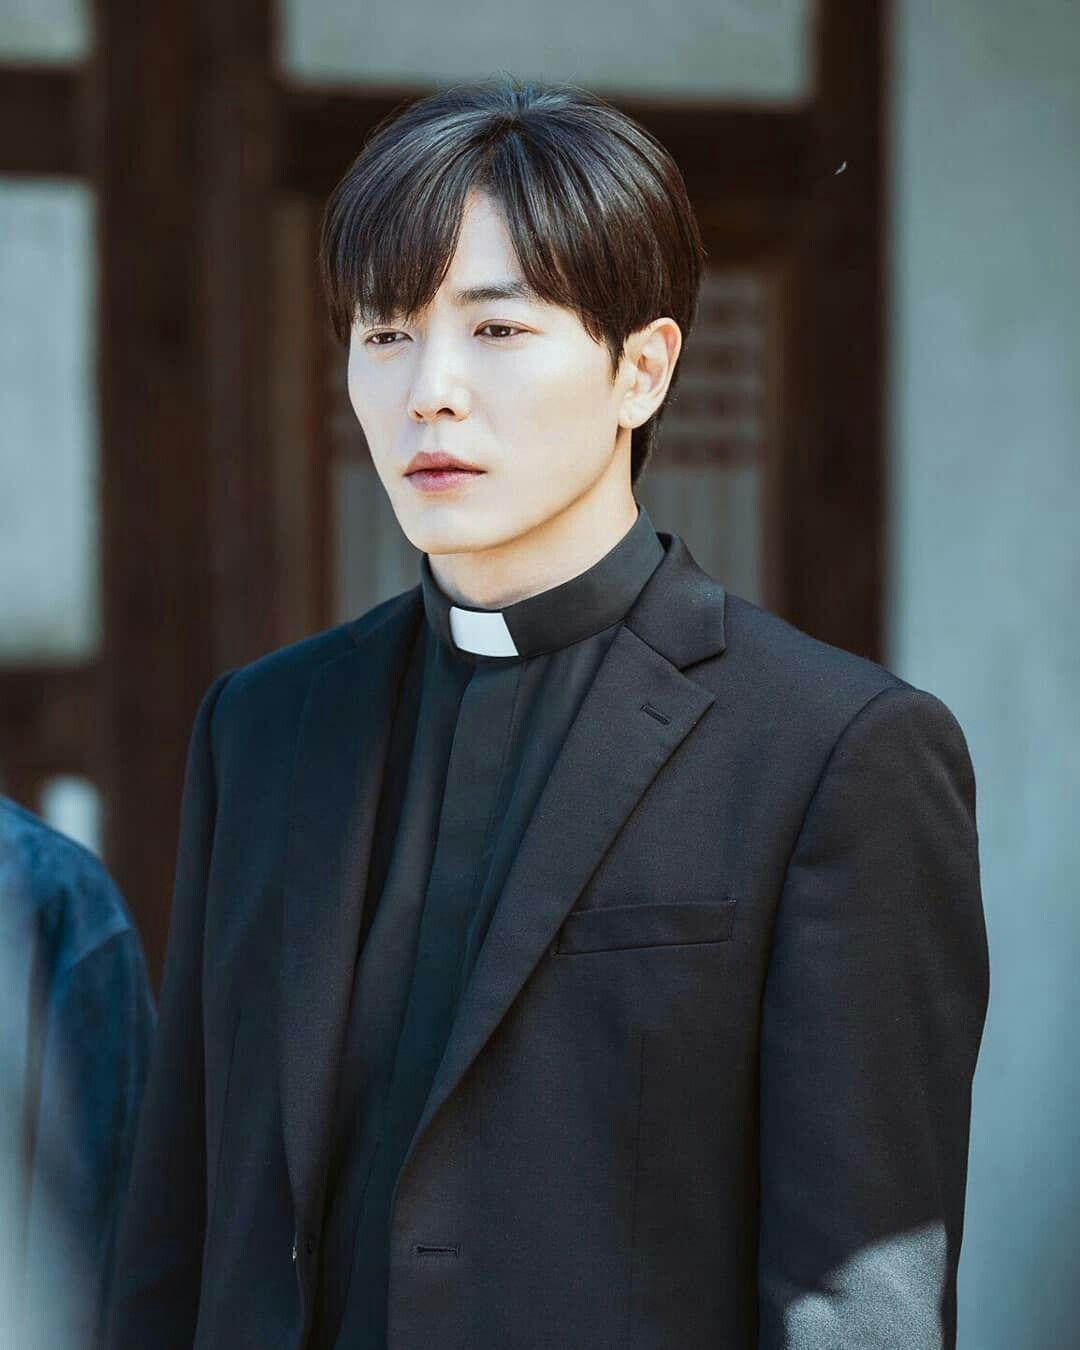 Kim Jae Wook. The Guest (Kim Jae Wook) in 2019